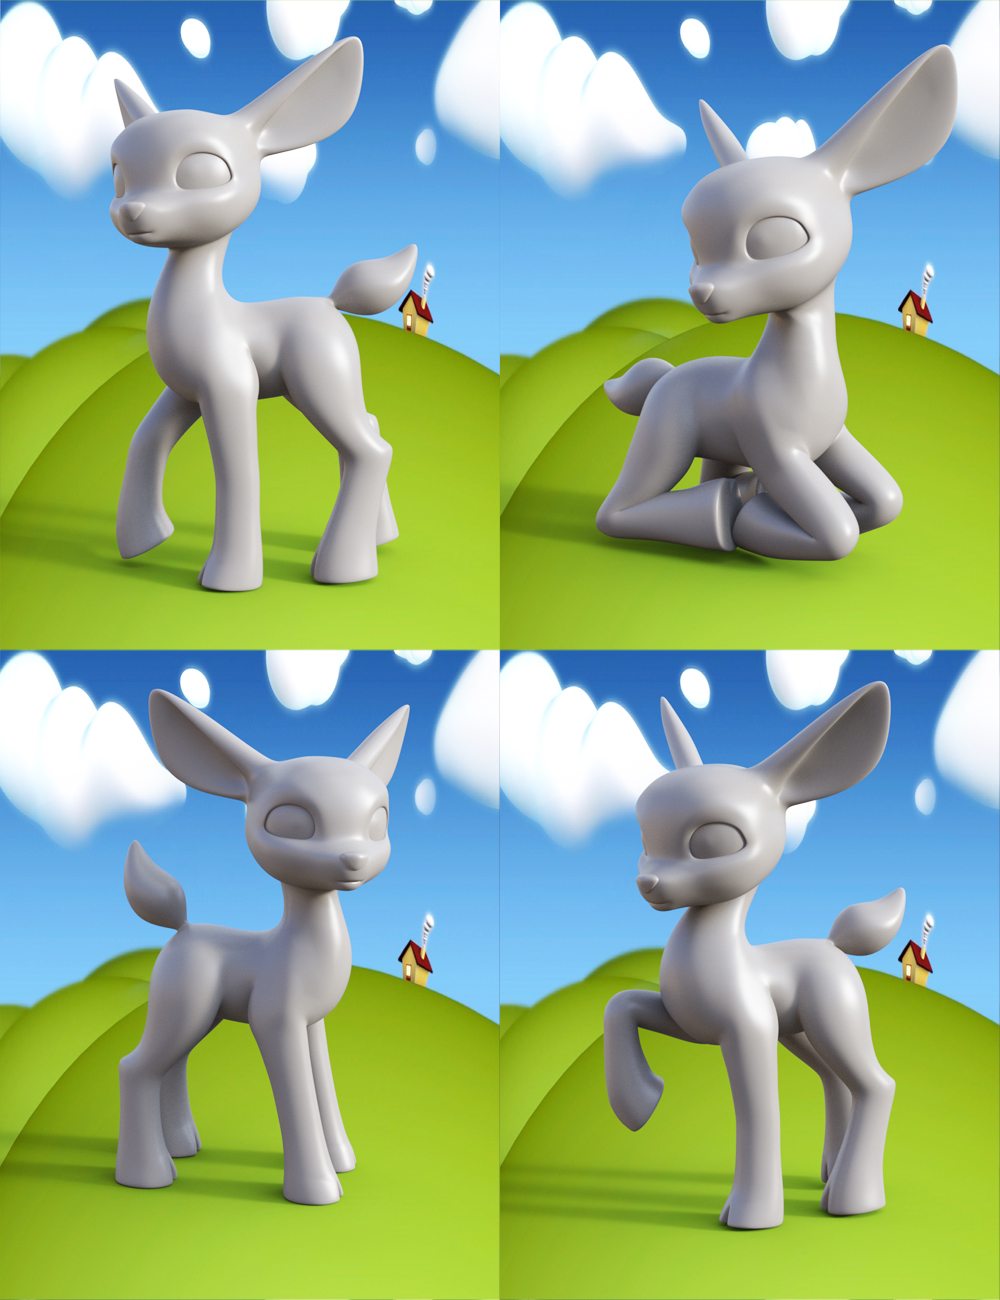 Lovely Precious Vol 01 -  Deer by: Muscleman, 3D Models by Daz 3D